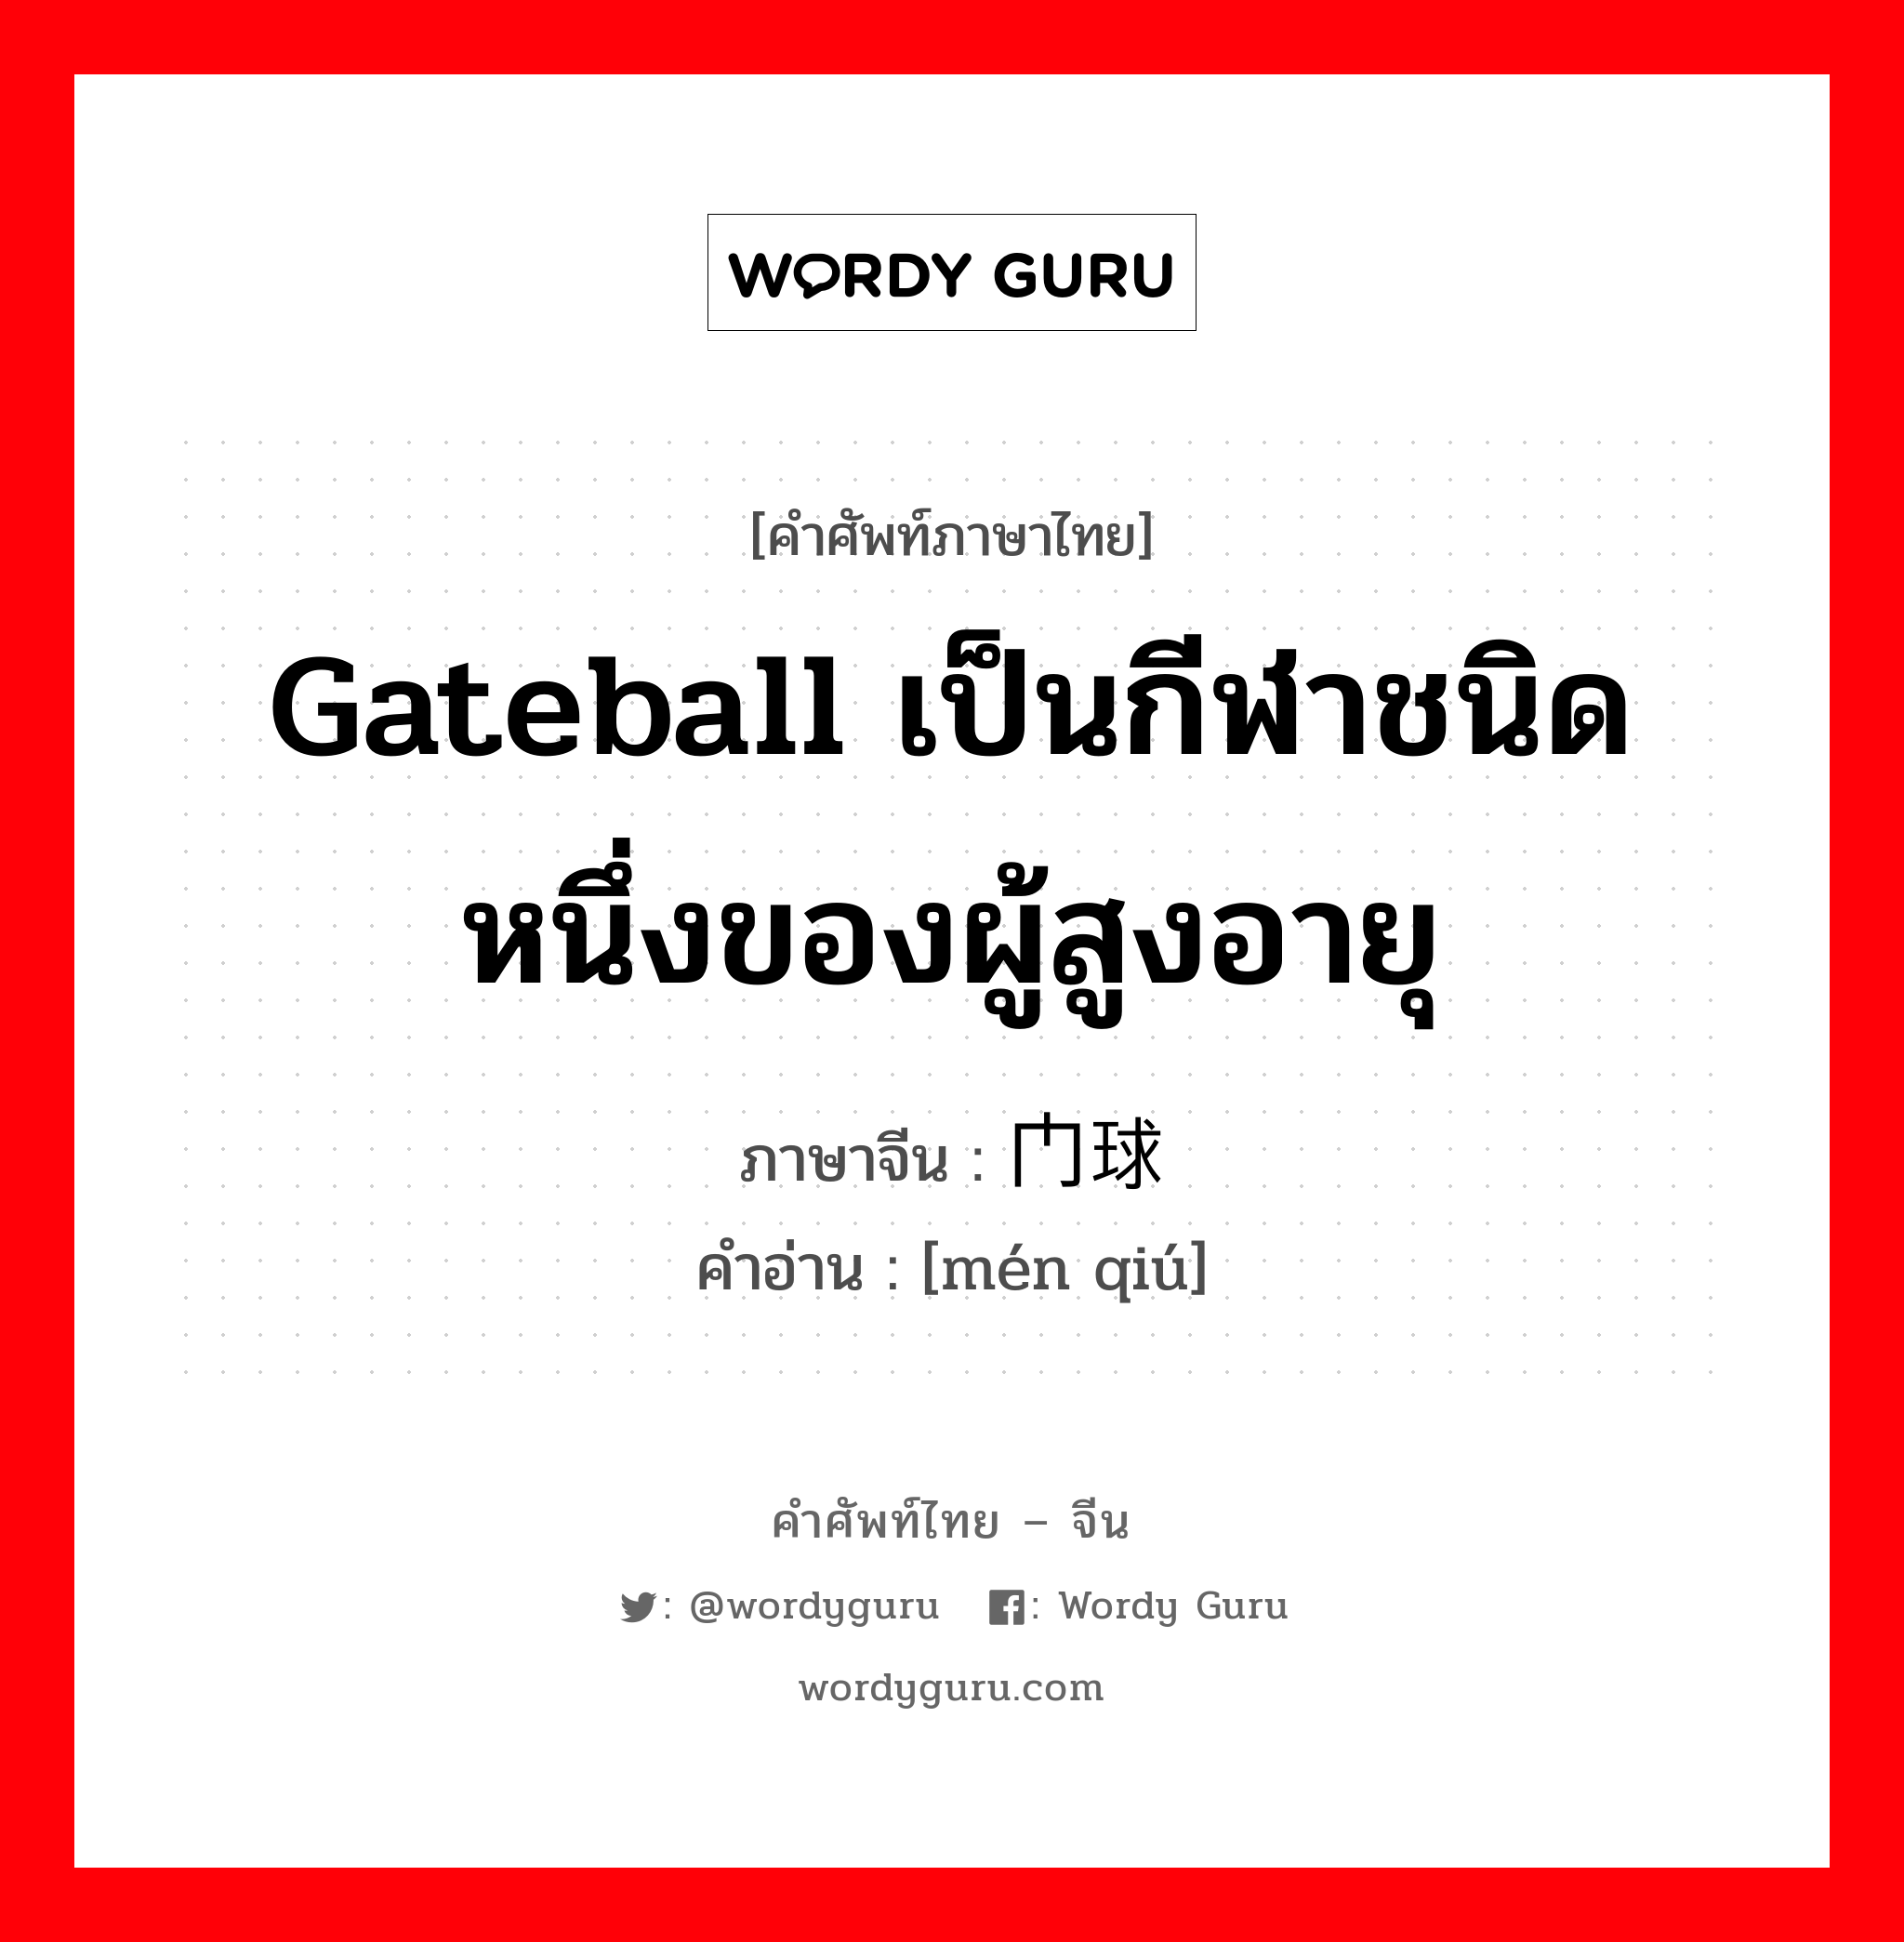 Gateball เป็นกีฬาชนิดหนึ่งของผู้สูงอายุ ภาษาจีนคืออะไร, คำศัพท์ภาษาไทย - จีน Gateball เป็นกีฬาชนิดหนึ่งของผู้สูงอายุ ภาษาจีน 门球 คำอ่าน [mén qiú]